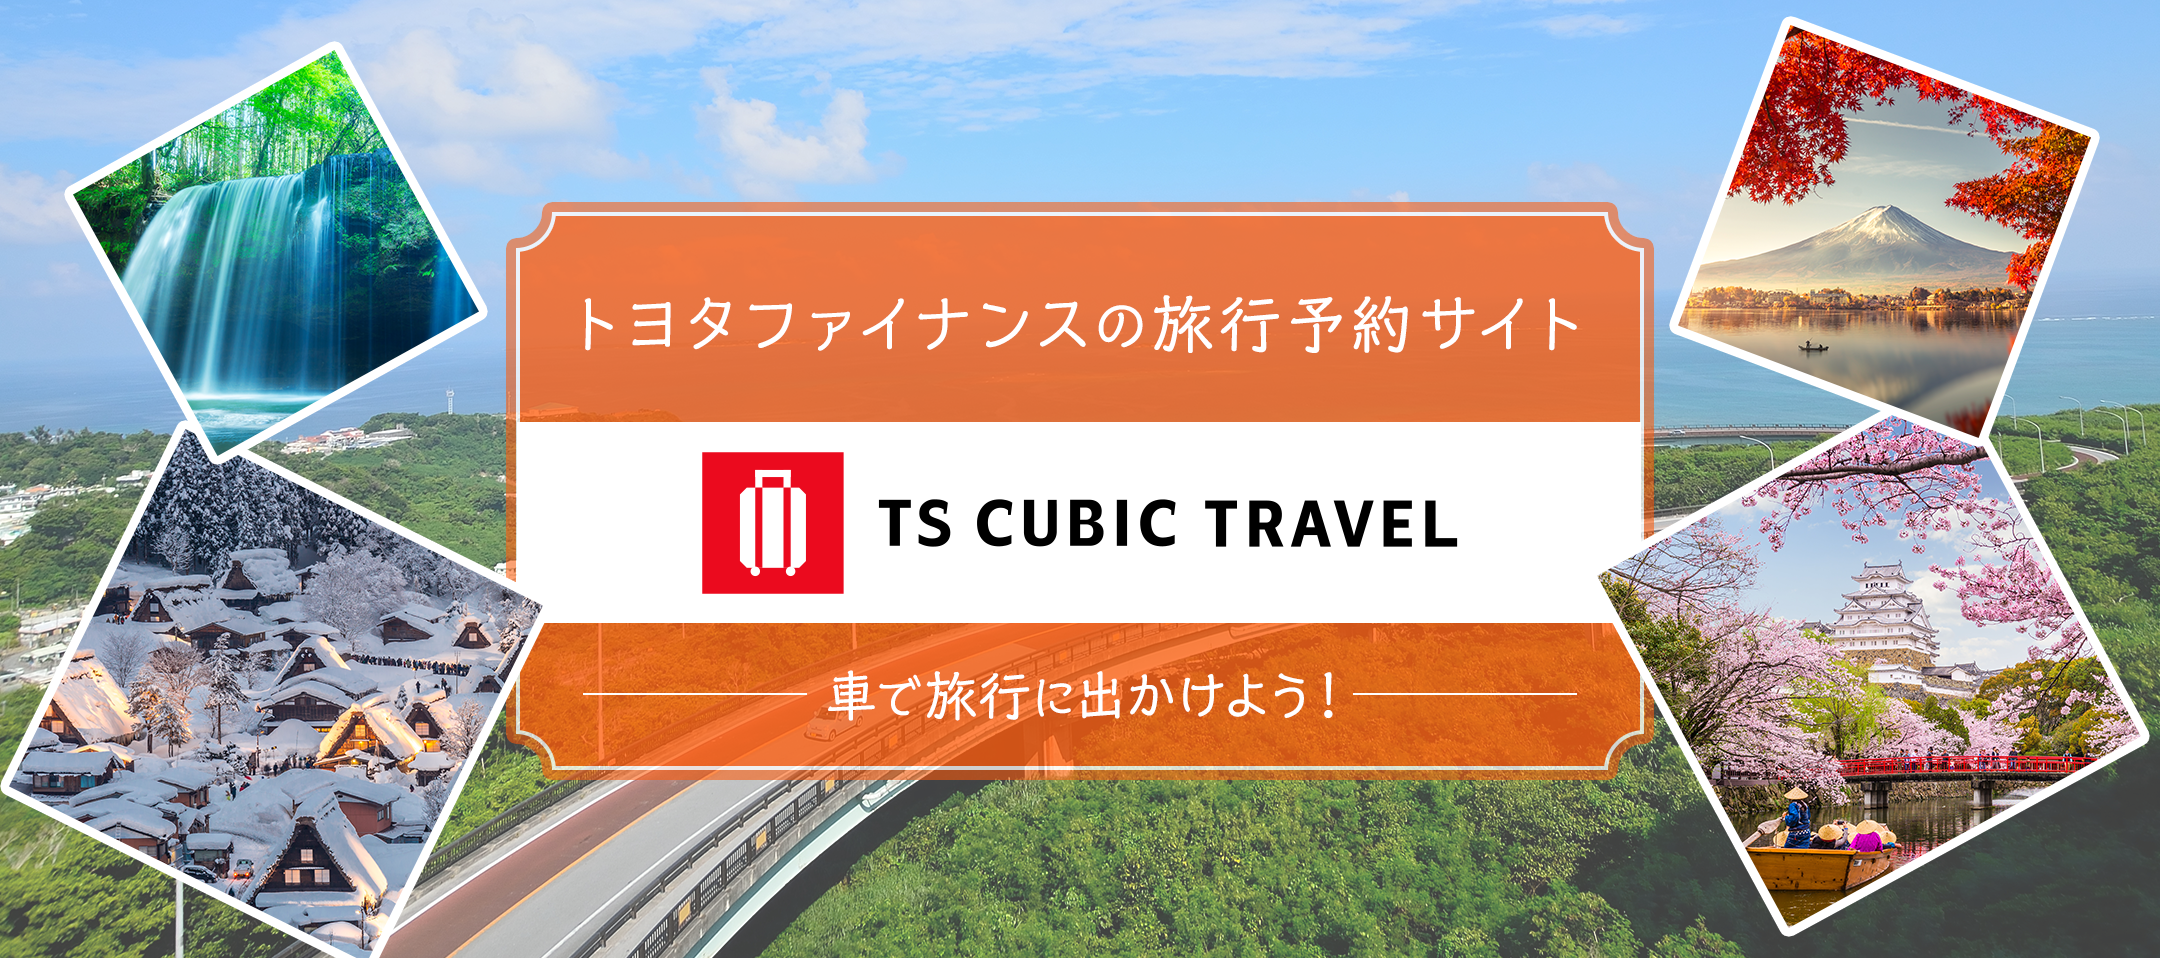 TS CUBIC TRAVEL トヨタファイナンスの旅行サイト